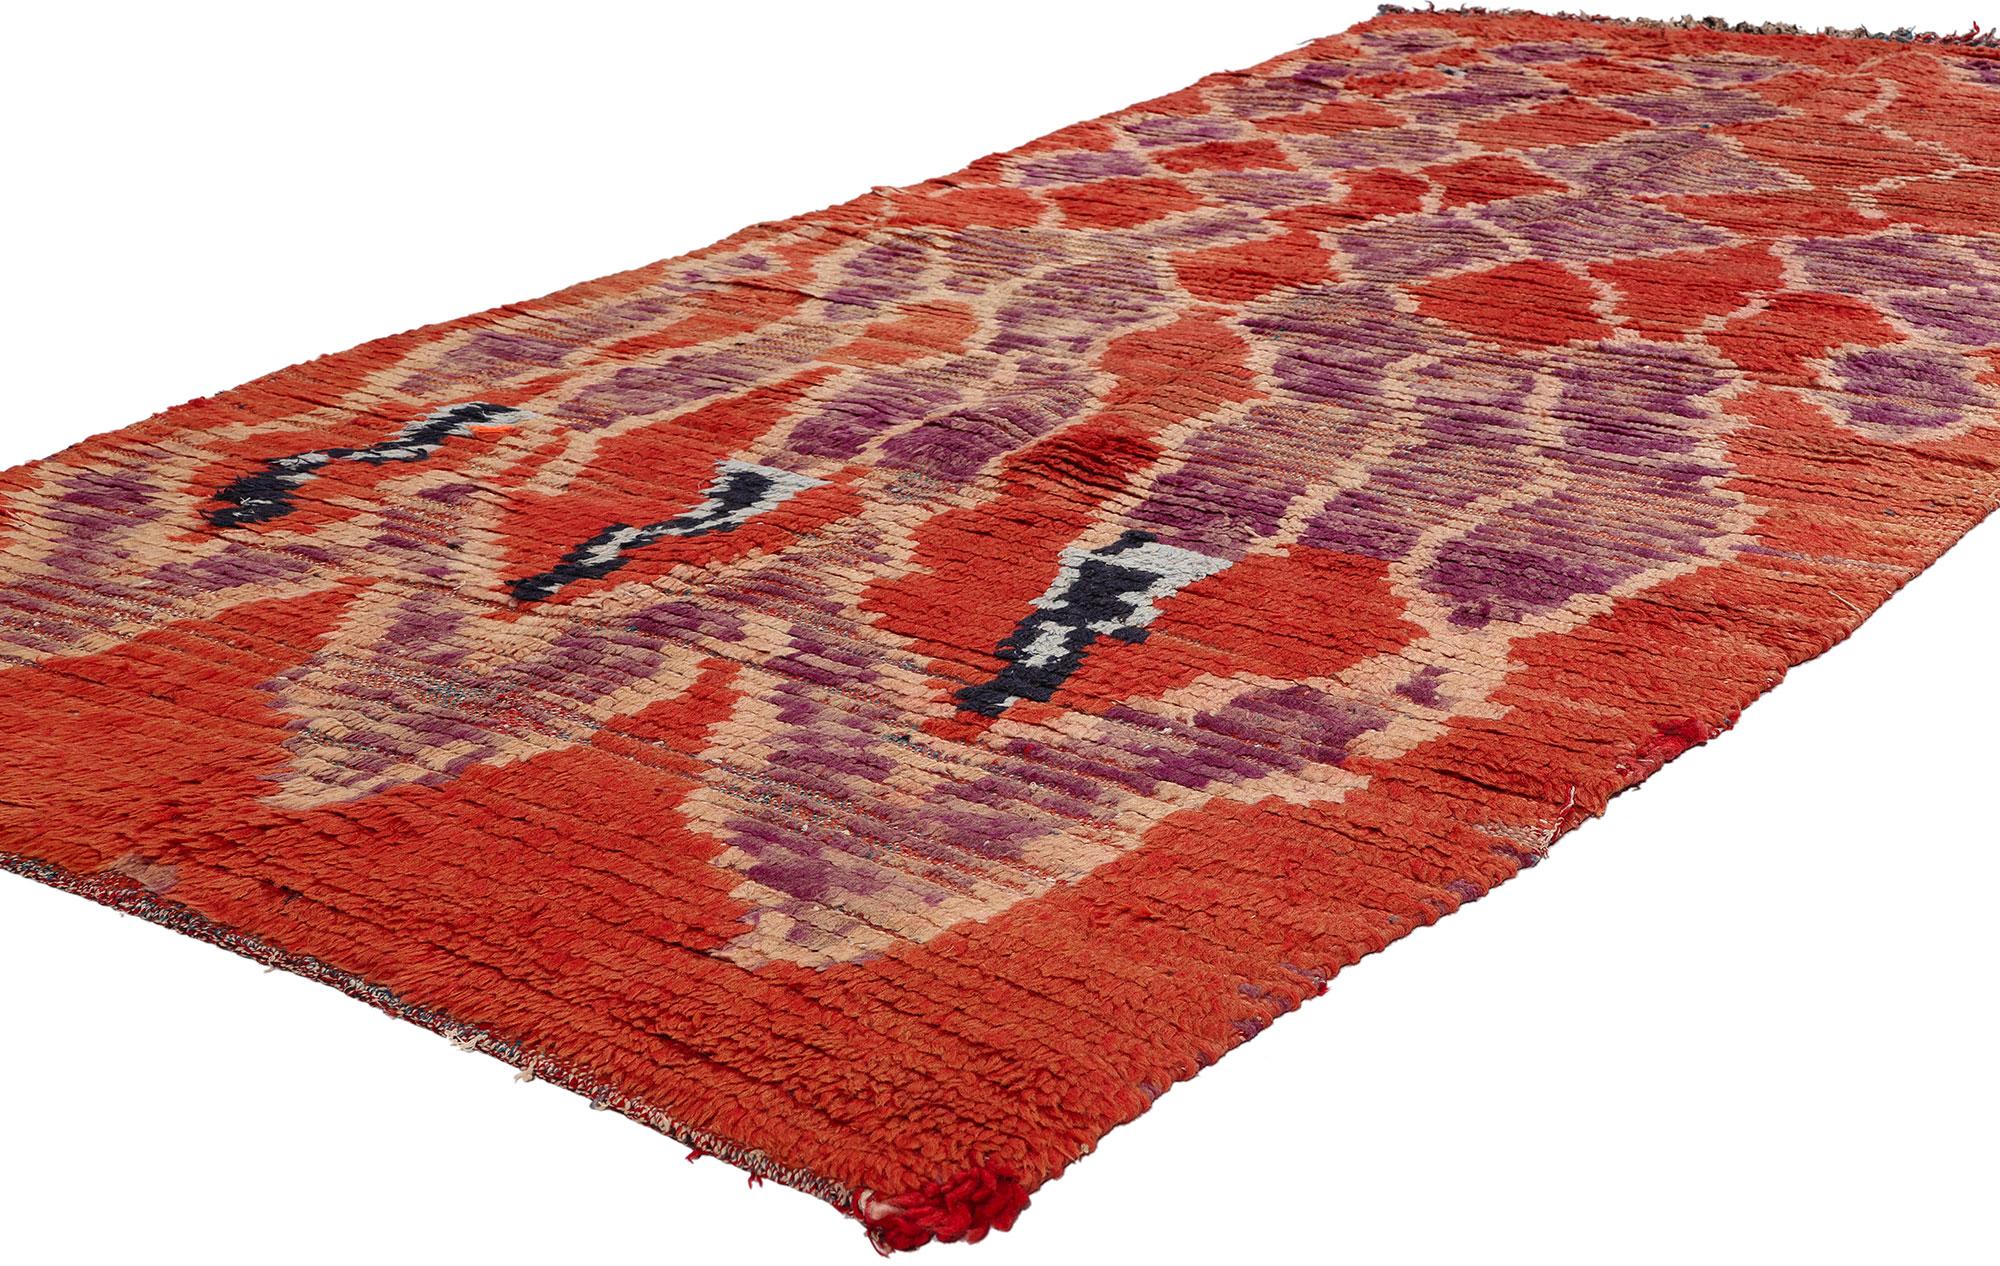 21734 Vintage Rot Marokkanischer Azilal-Teppich, 03'10 x 08'02. Rote marokkanische Azilal-Teppiche sind eine Art traditioneller marokkanischer Teppiche, die von Berber-Kunsthandwerkern in der Azilal-Region in Marokko handgewebt werden und sich durch